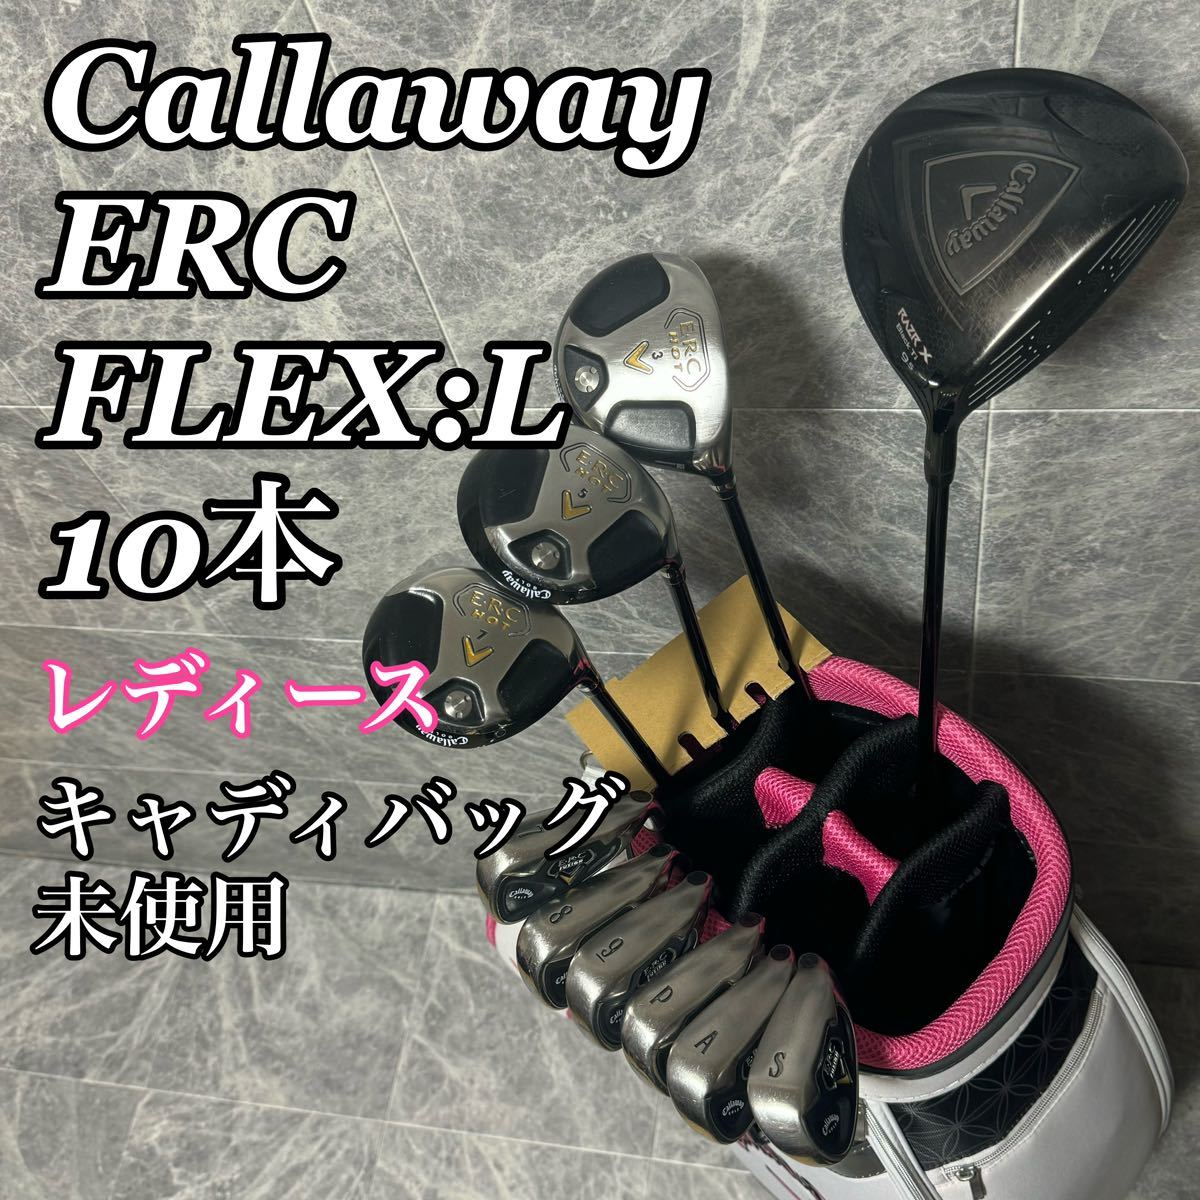 Callaway キャロウェイ ERC FUSION HOT RAZR ゴルフセット レディース 未使用 キャディバッグ アイアン